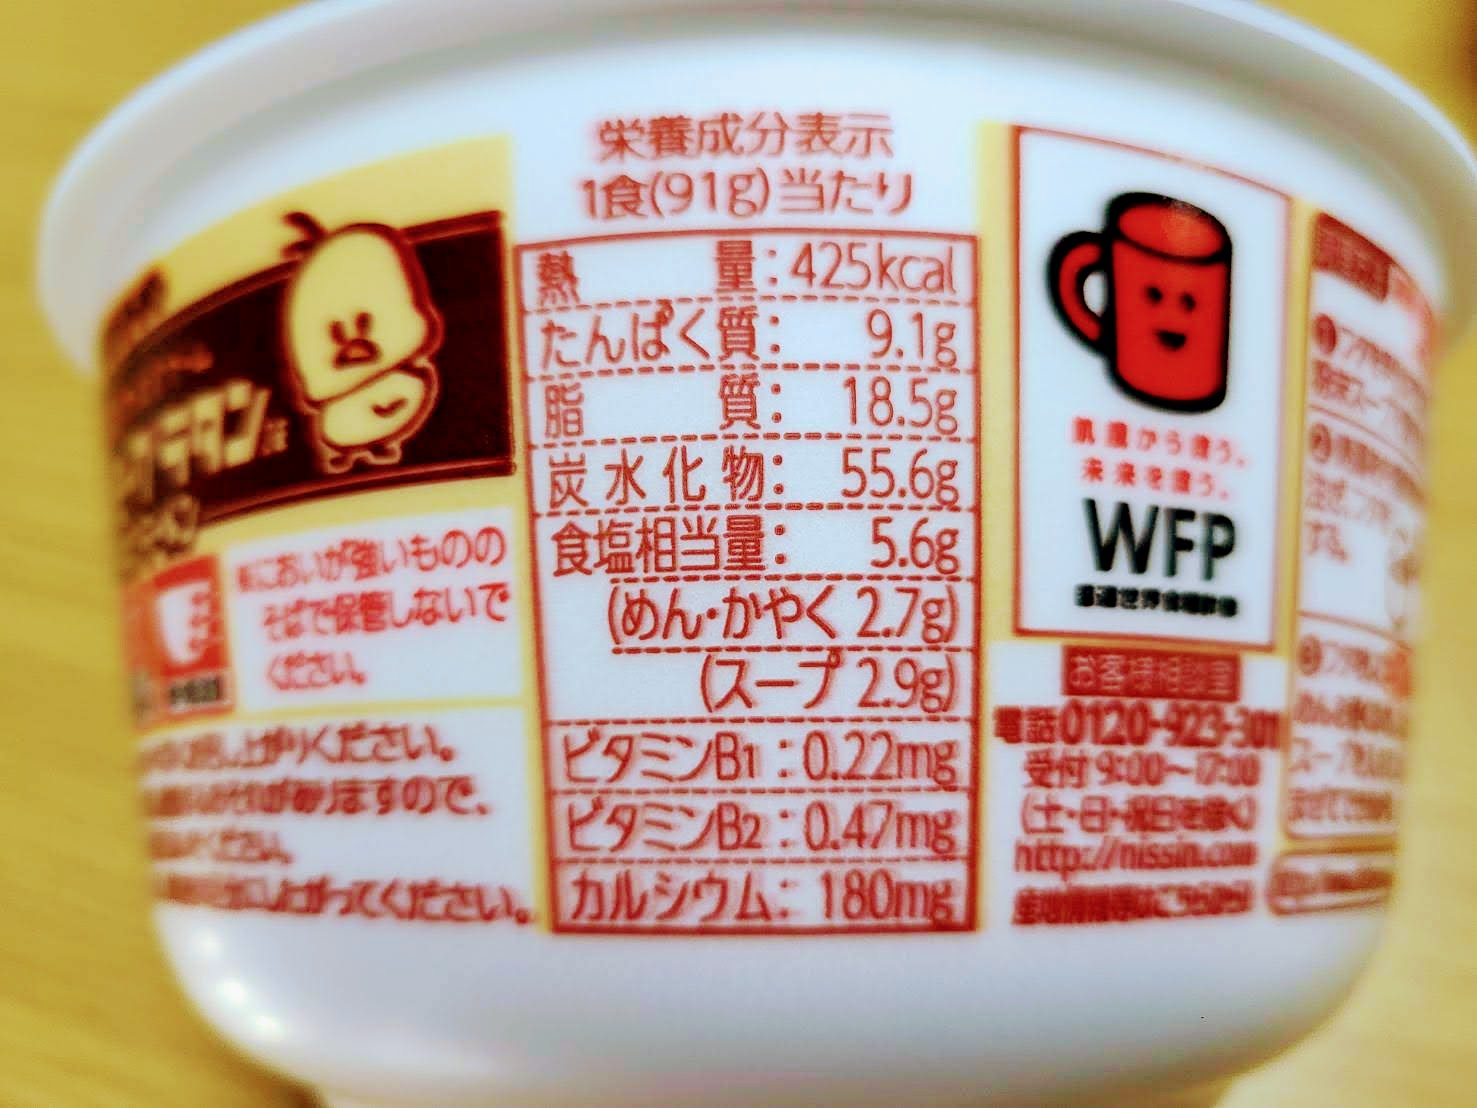 チキンラーメンどんぶり 昭和の洋食ブーム クリーミーグラタン味の栄養成分表示